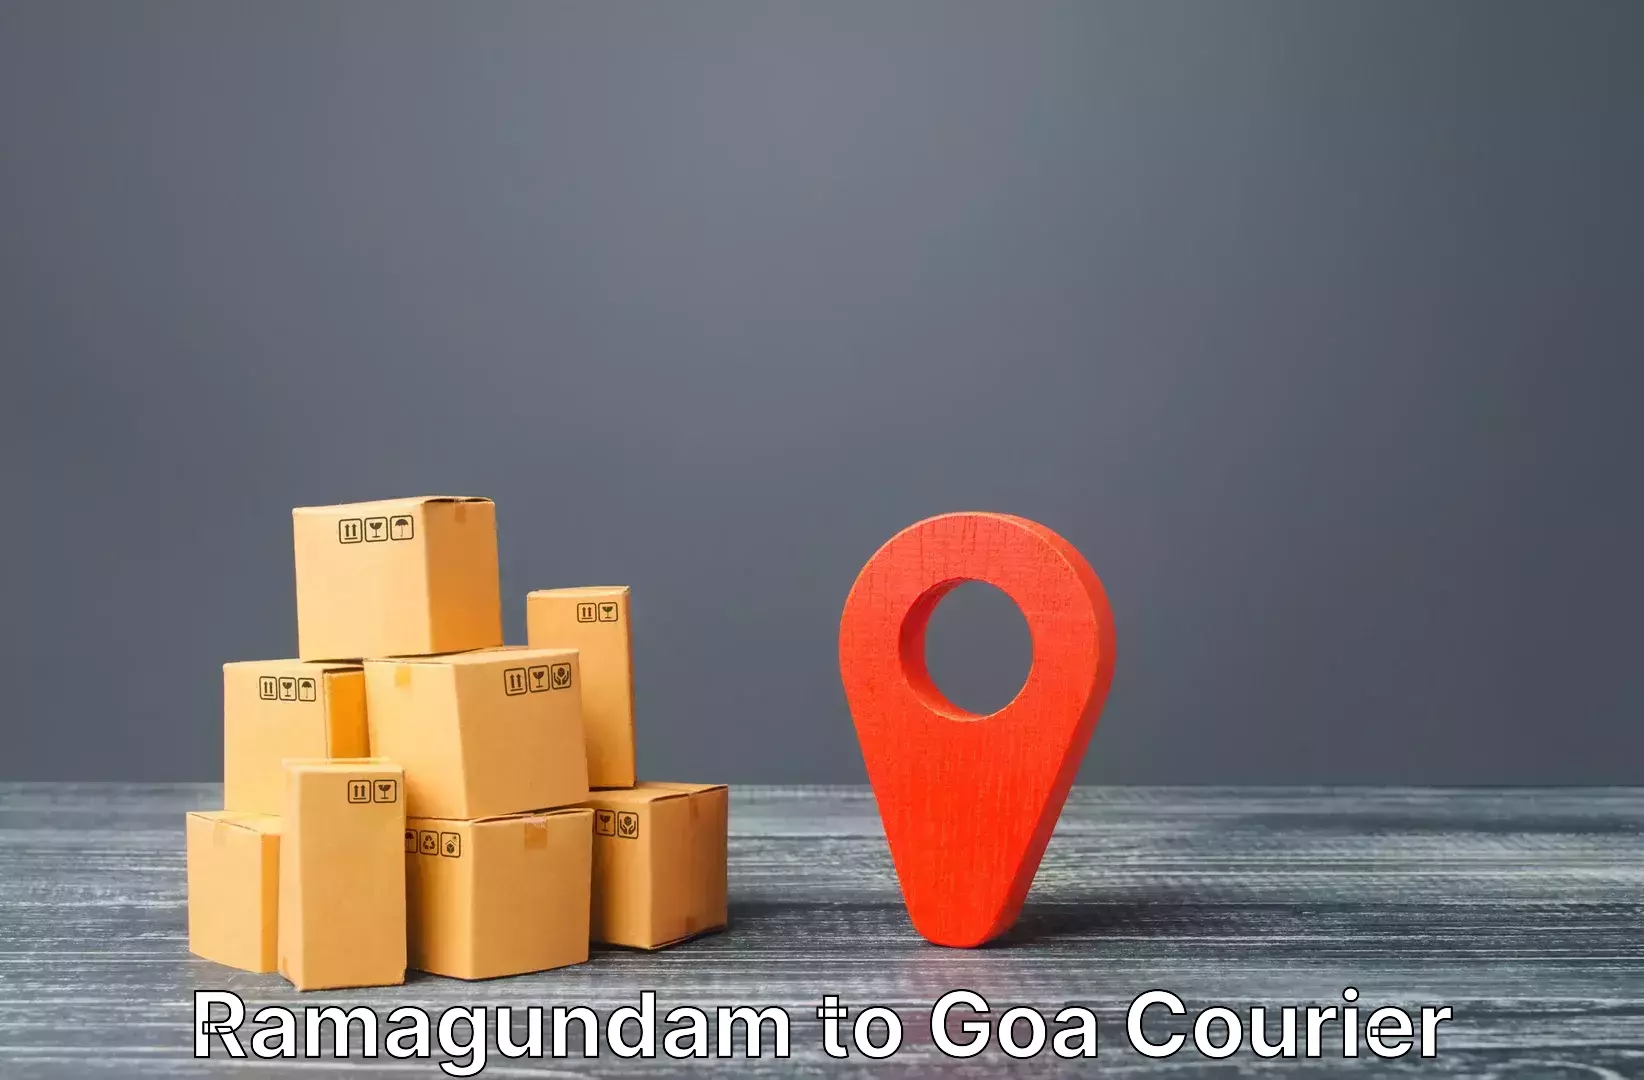 Luggage shipping service Ramagundam to Goa University